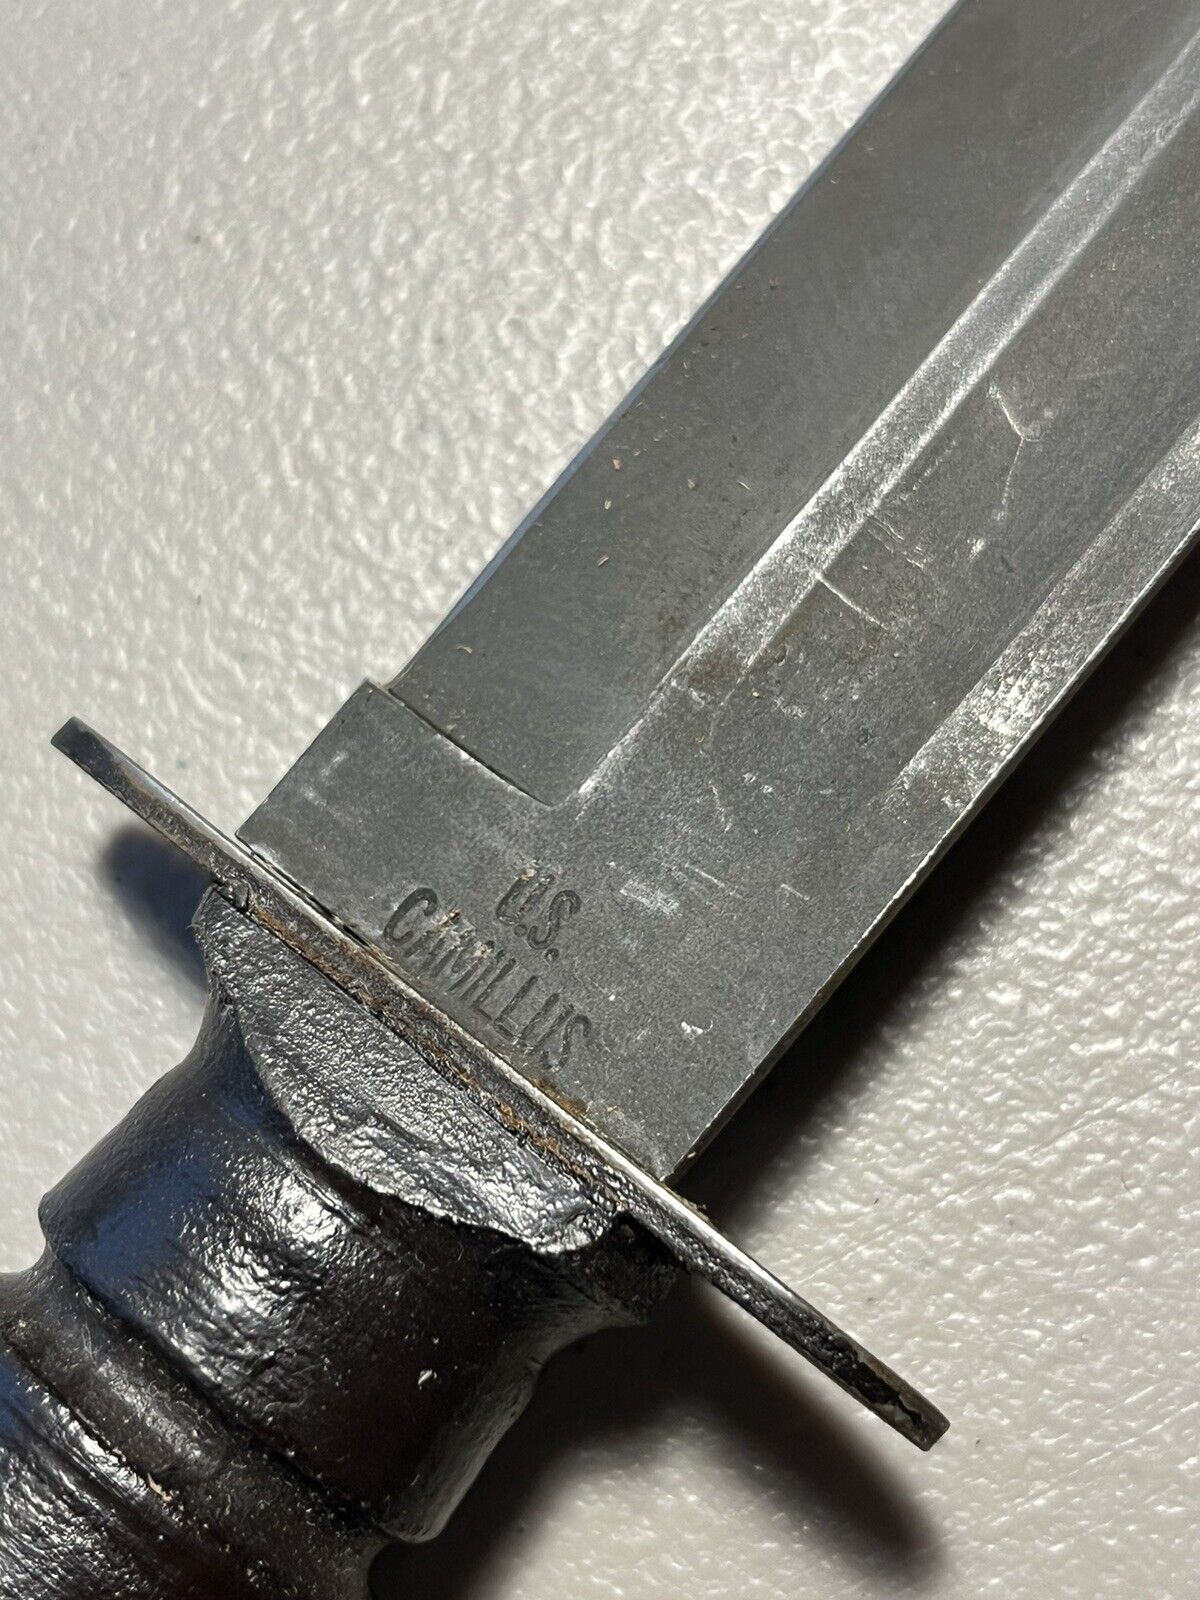 Vintage US Camillus Mark 2 Combat Knife and Sheath     Unusual